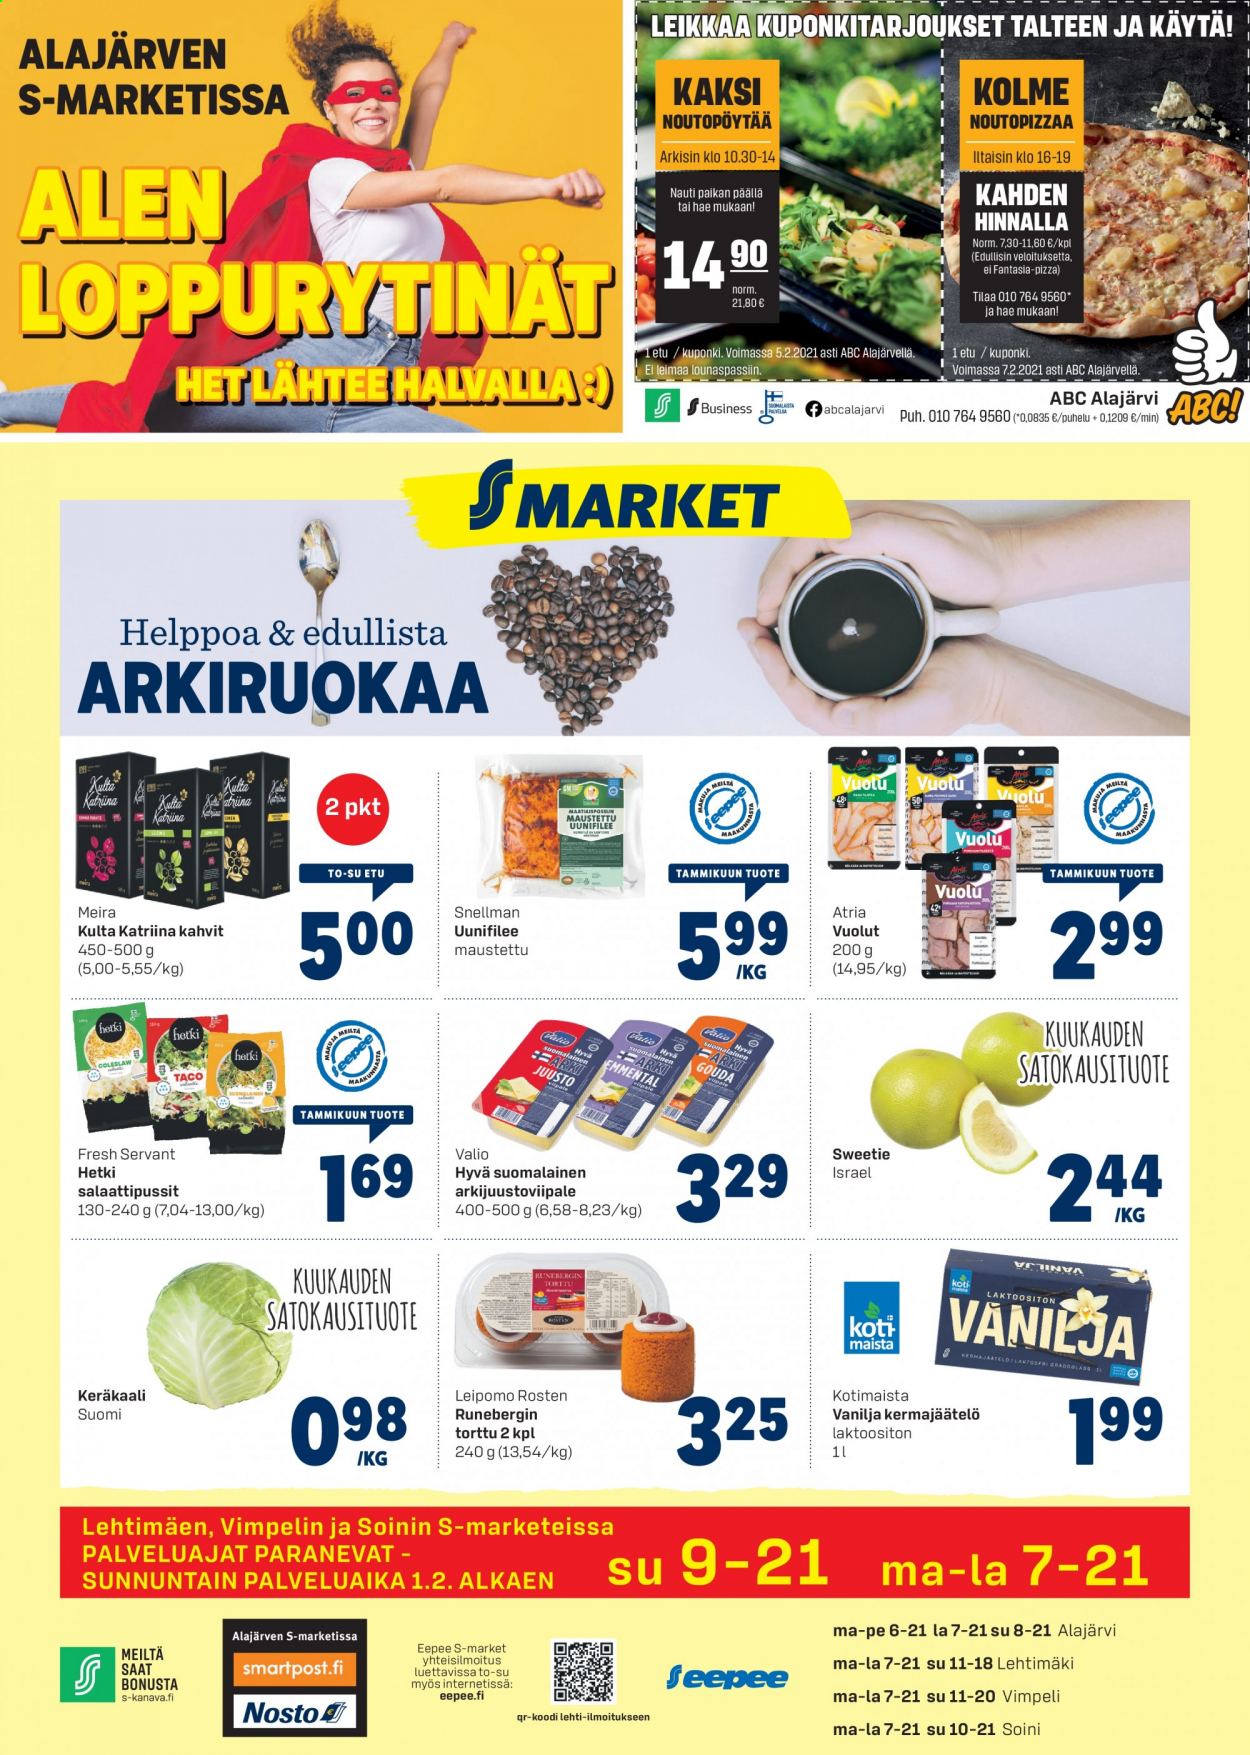 thumbnail - S-market tarjoukset  - 28.01.2021 - 29.01.2021 - Tarjoustuotteet - Atria, pizza, kahvi, vanilja. Sivu 1.